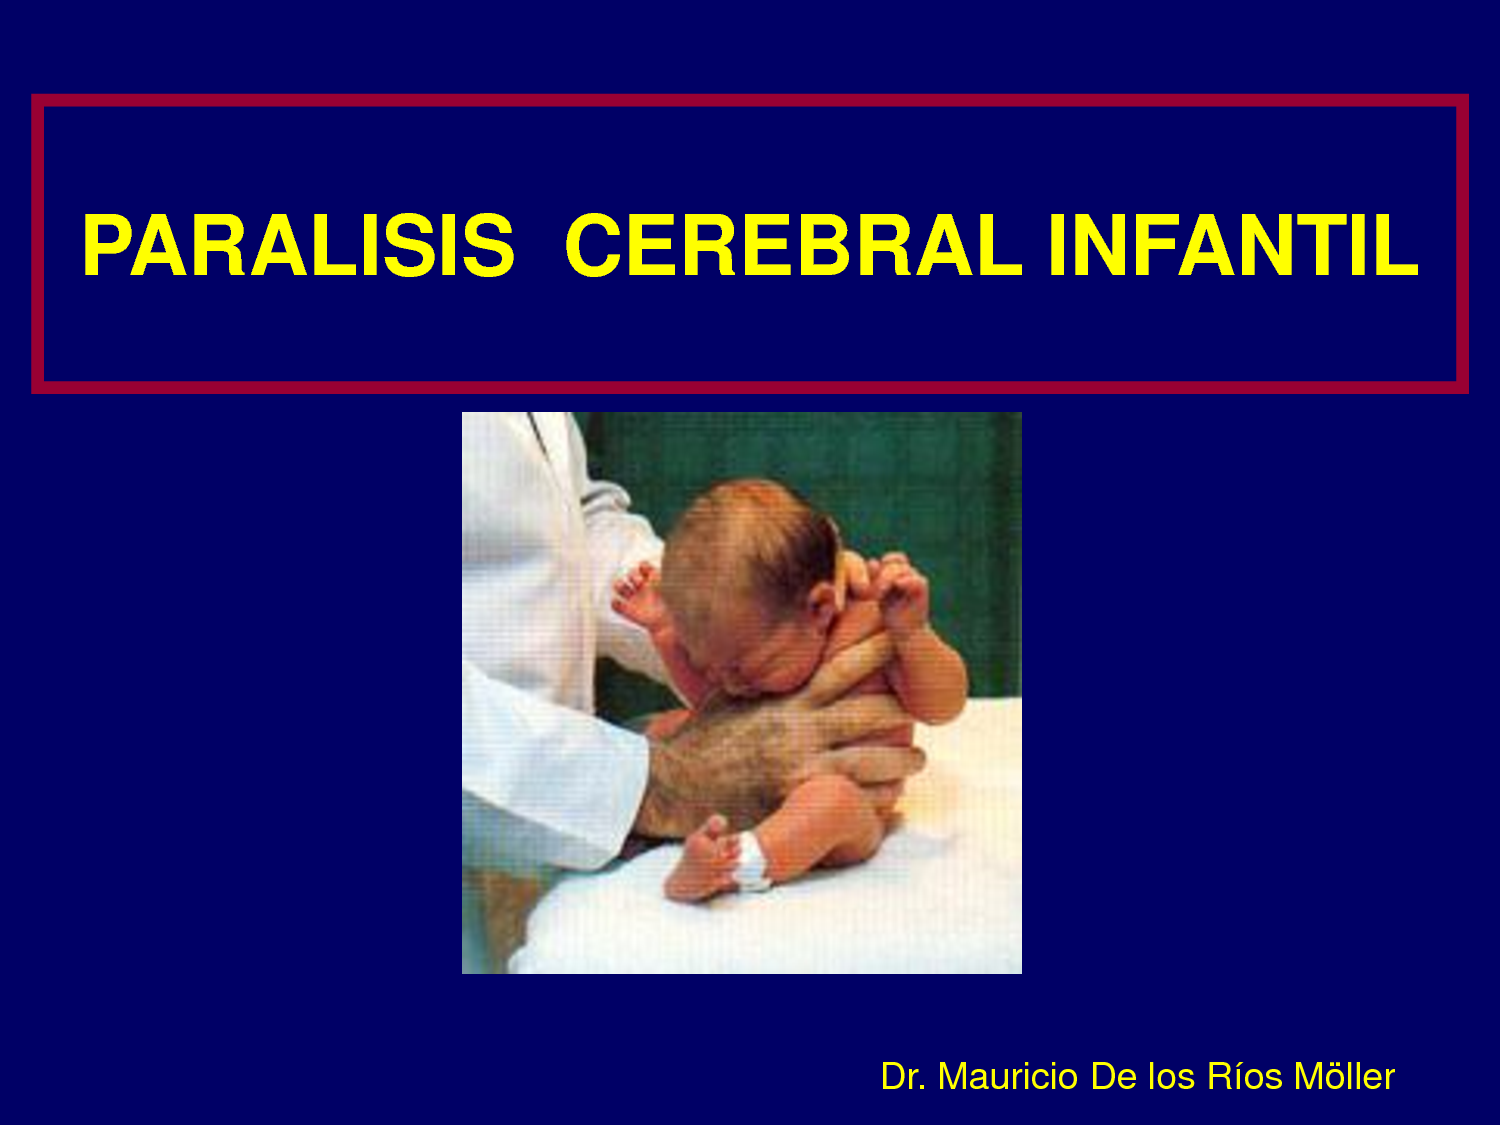 PCI Paralisis cerebral infantil tipos causas y tratamientos